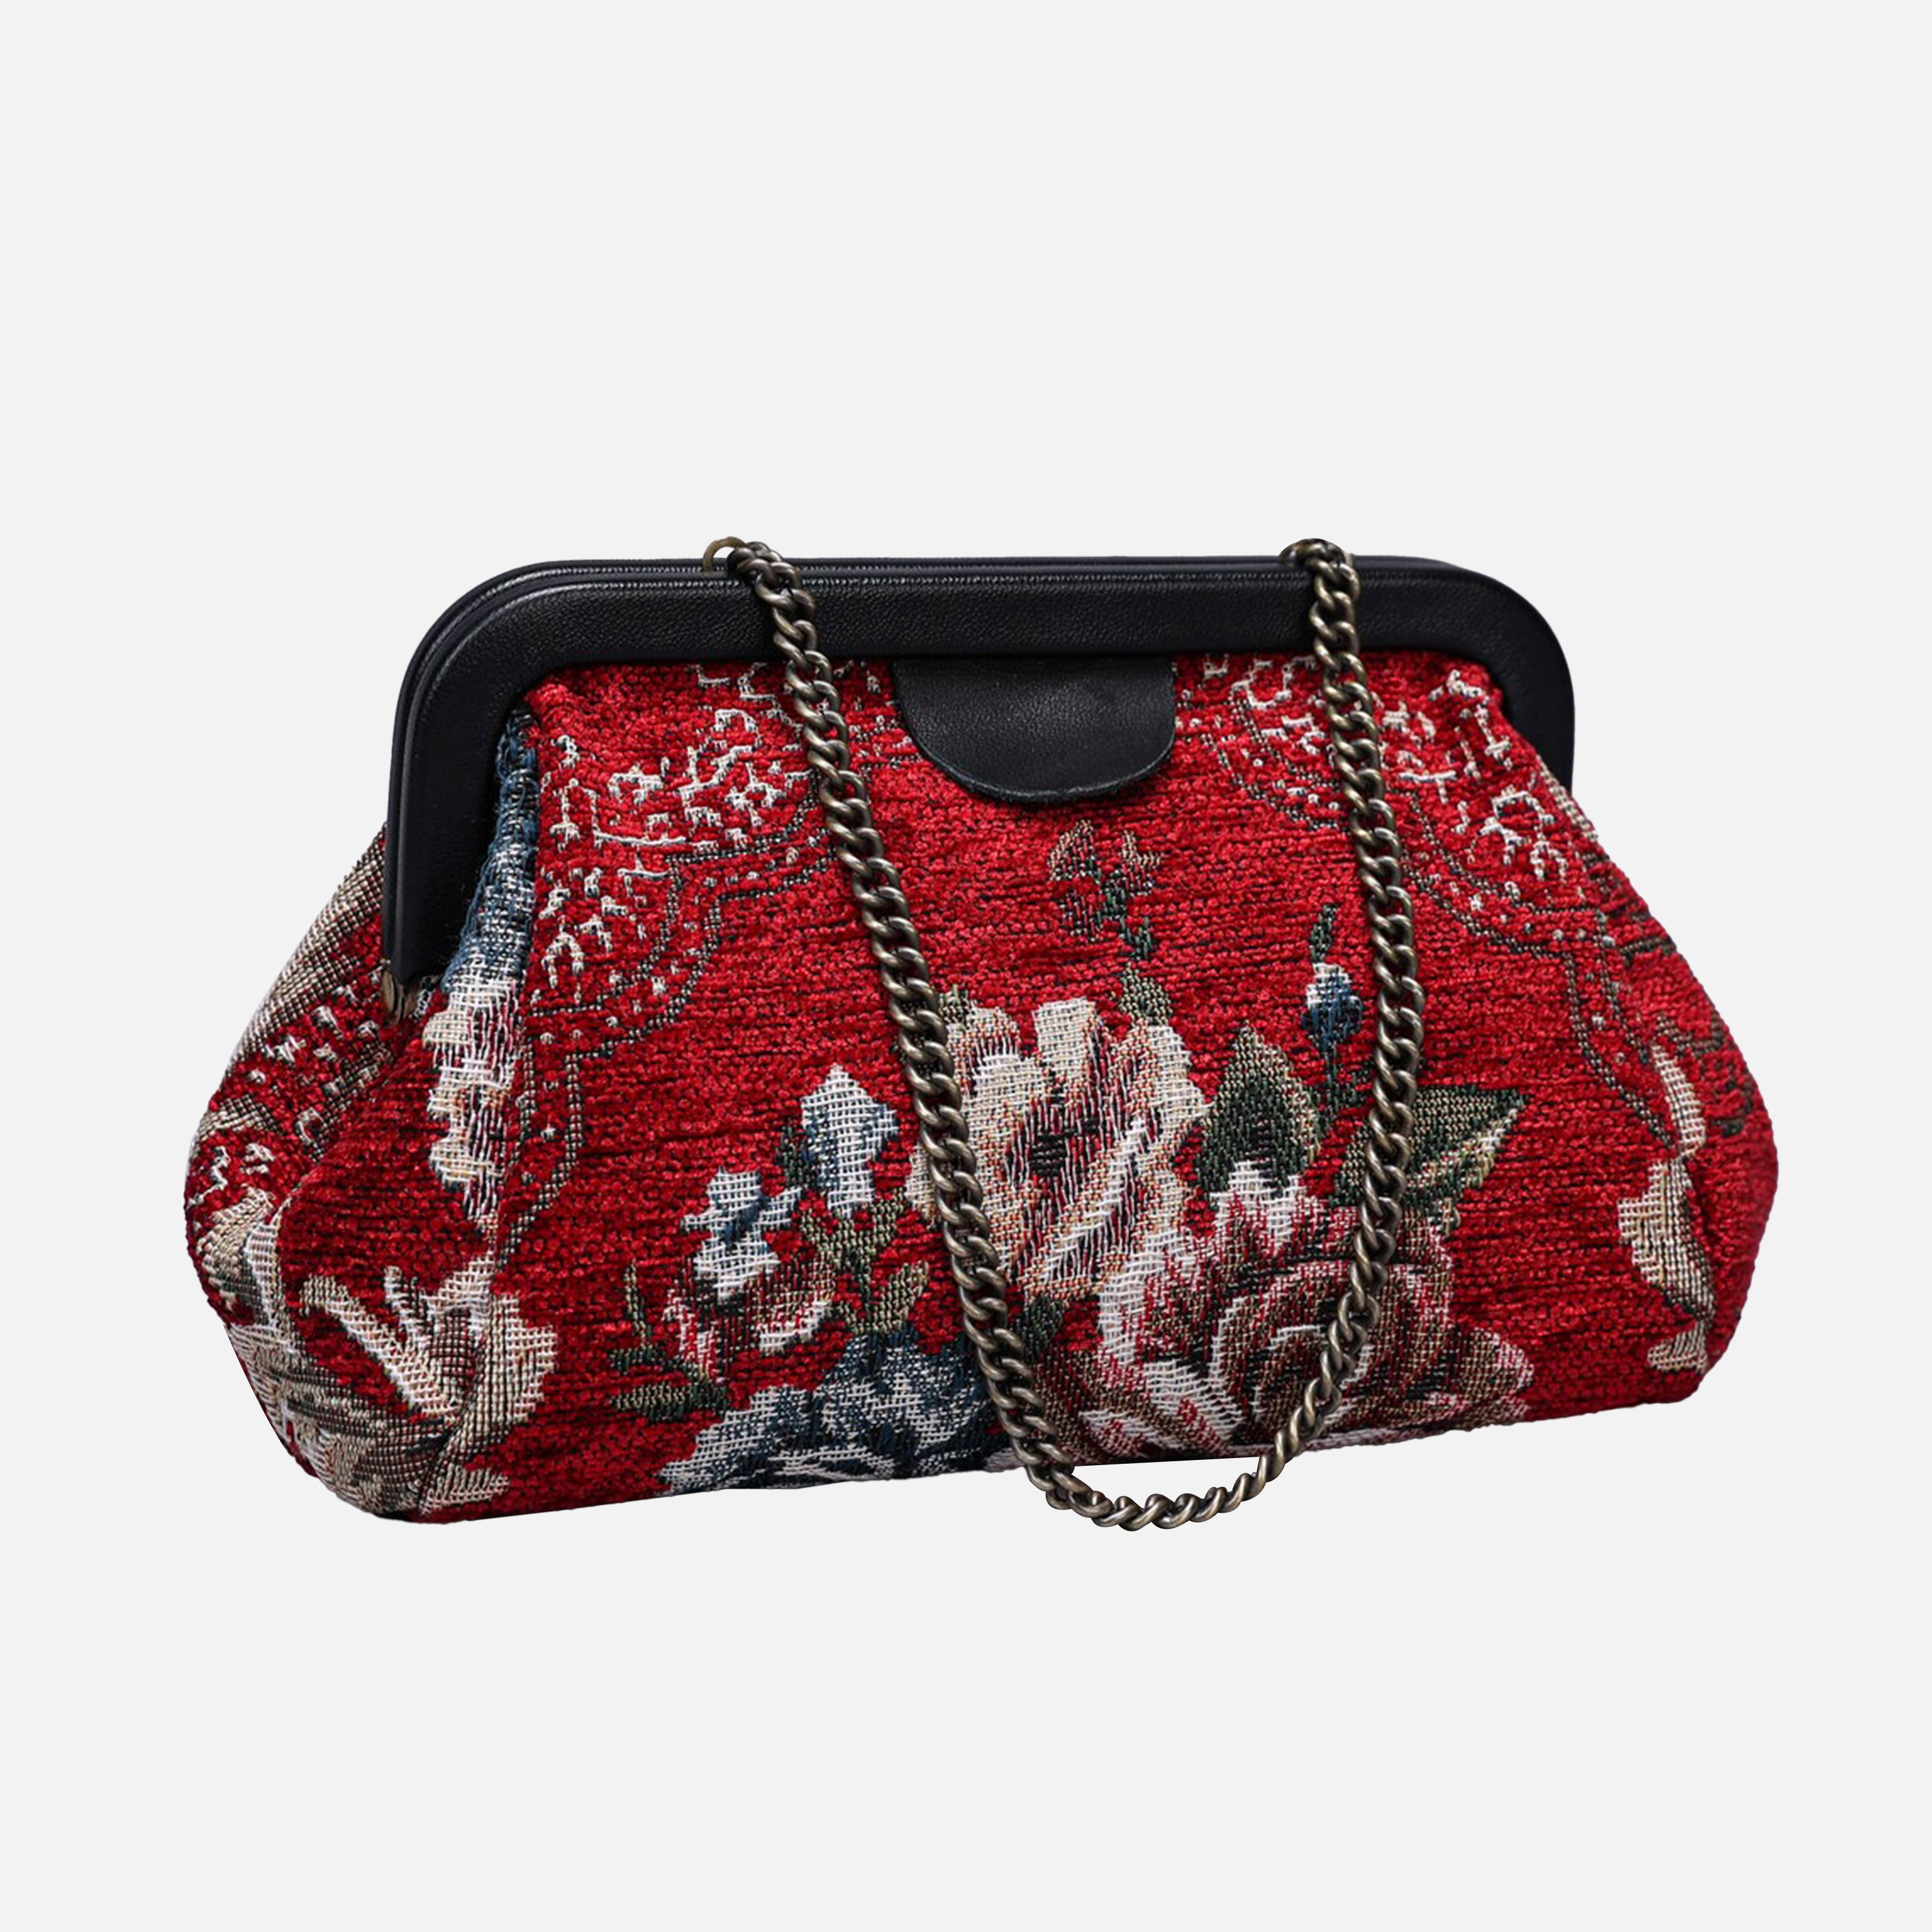 Floral Red Evening Bag Clutch carpet bag MCW Handmade-7